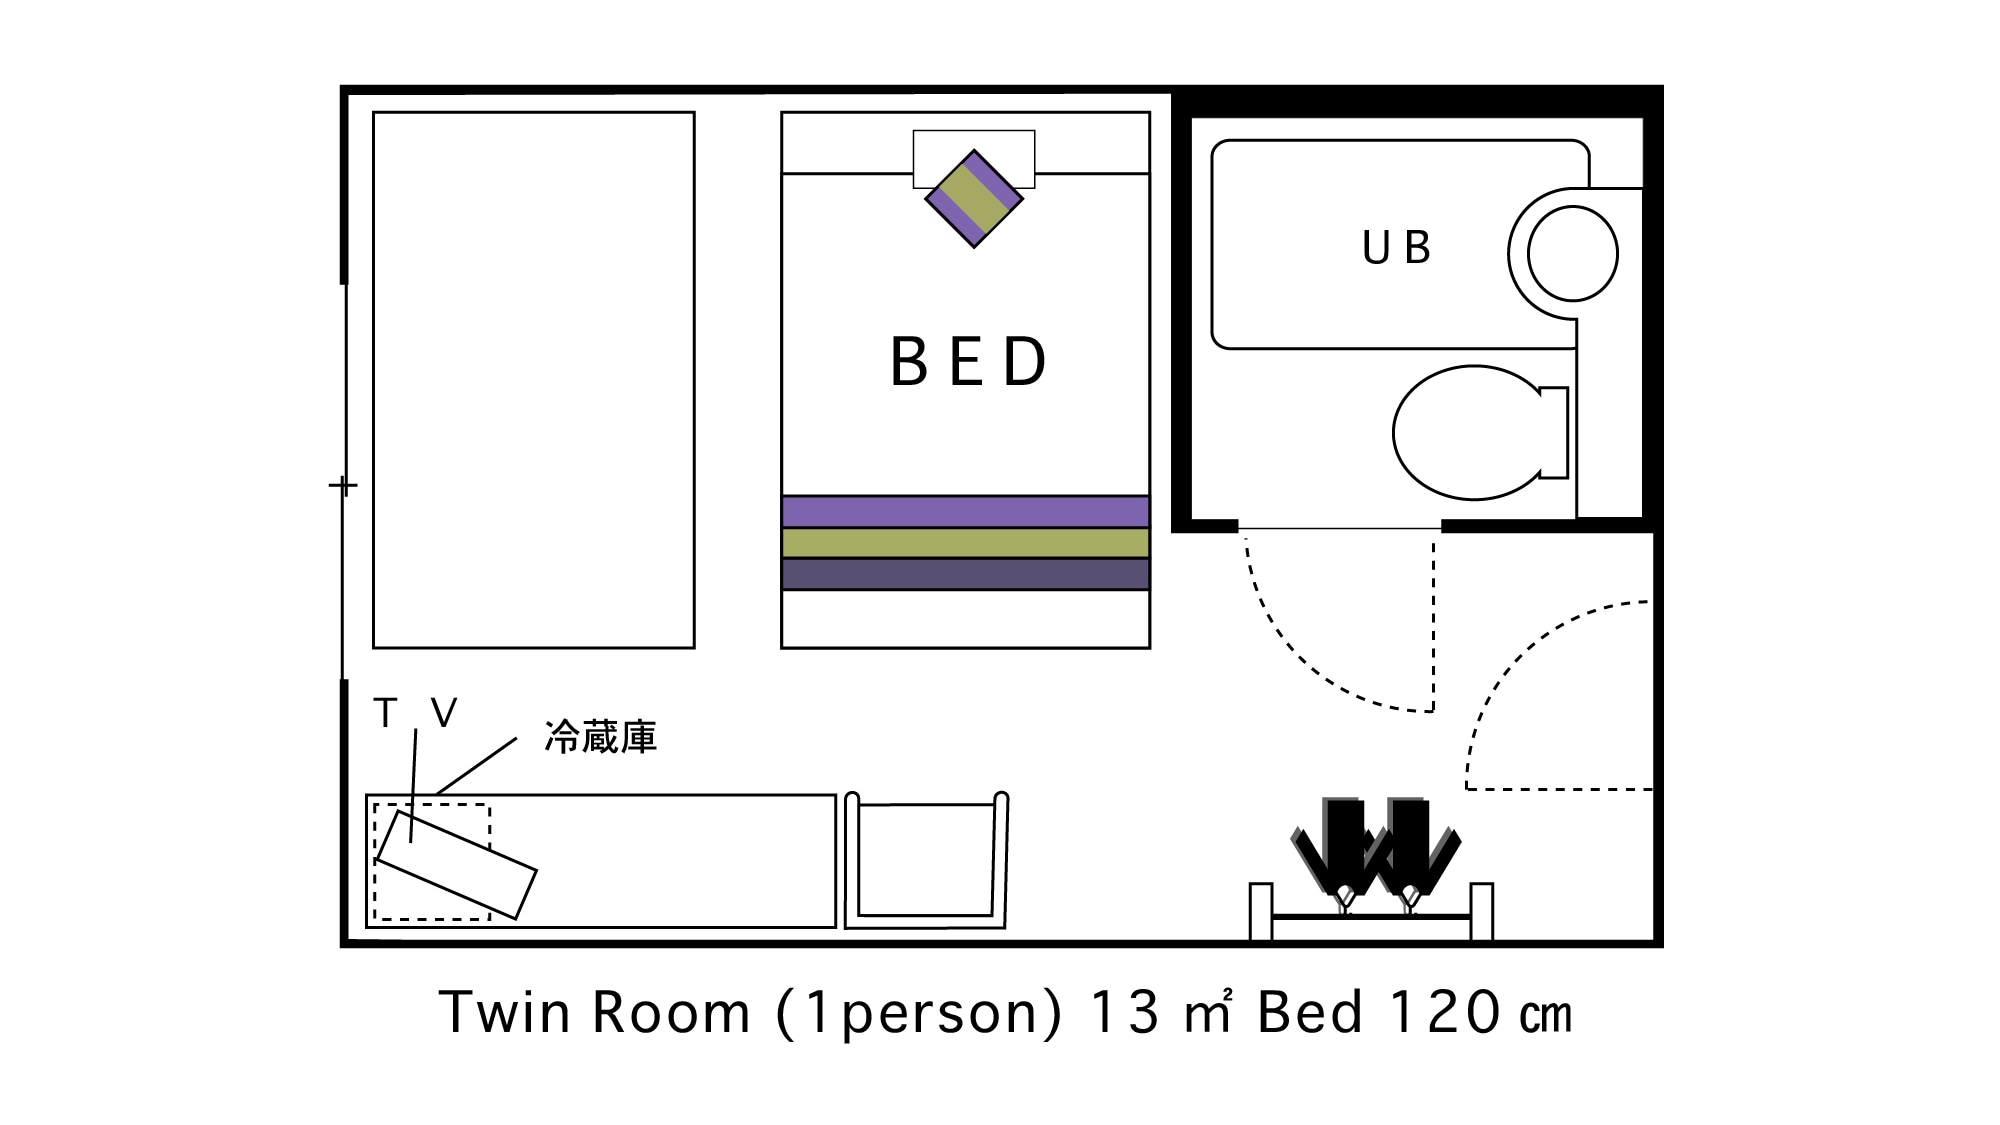 ห้องเตียงแฝดสำหรับผู้ใหญ่ 1 คน